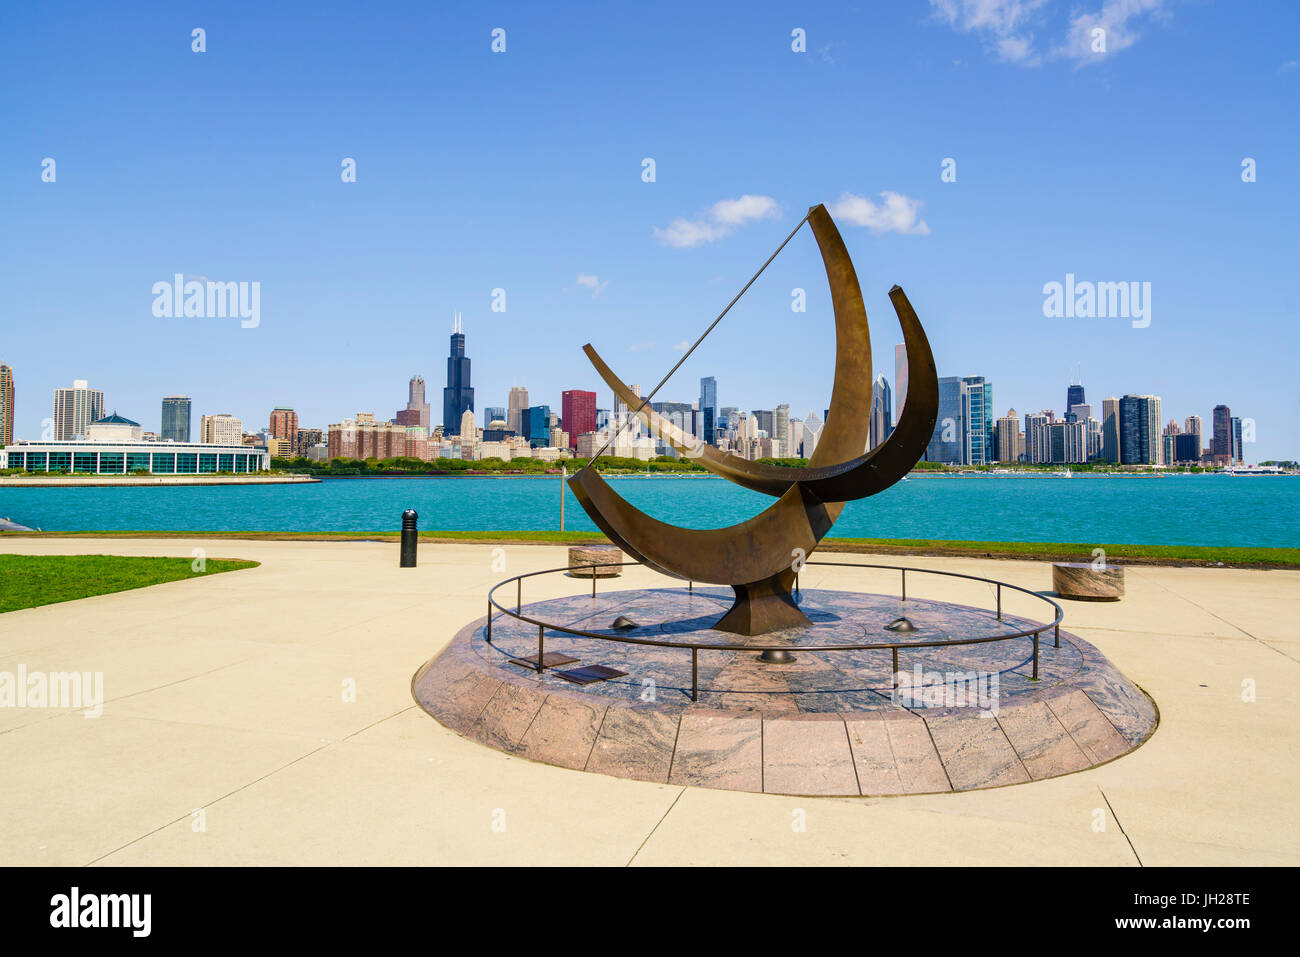 L'Adler Planetarium cadran solaire avec le lac Michigan et sur les toits de la ville au-delà, Chicago, Illinois, États-Unis d'Amérique Banque D'Images